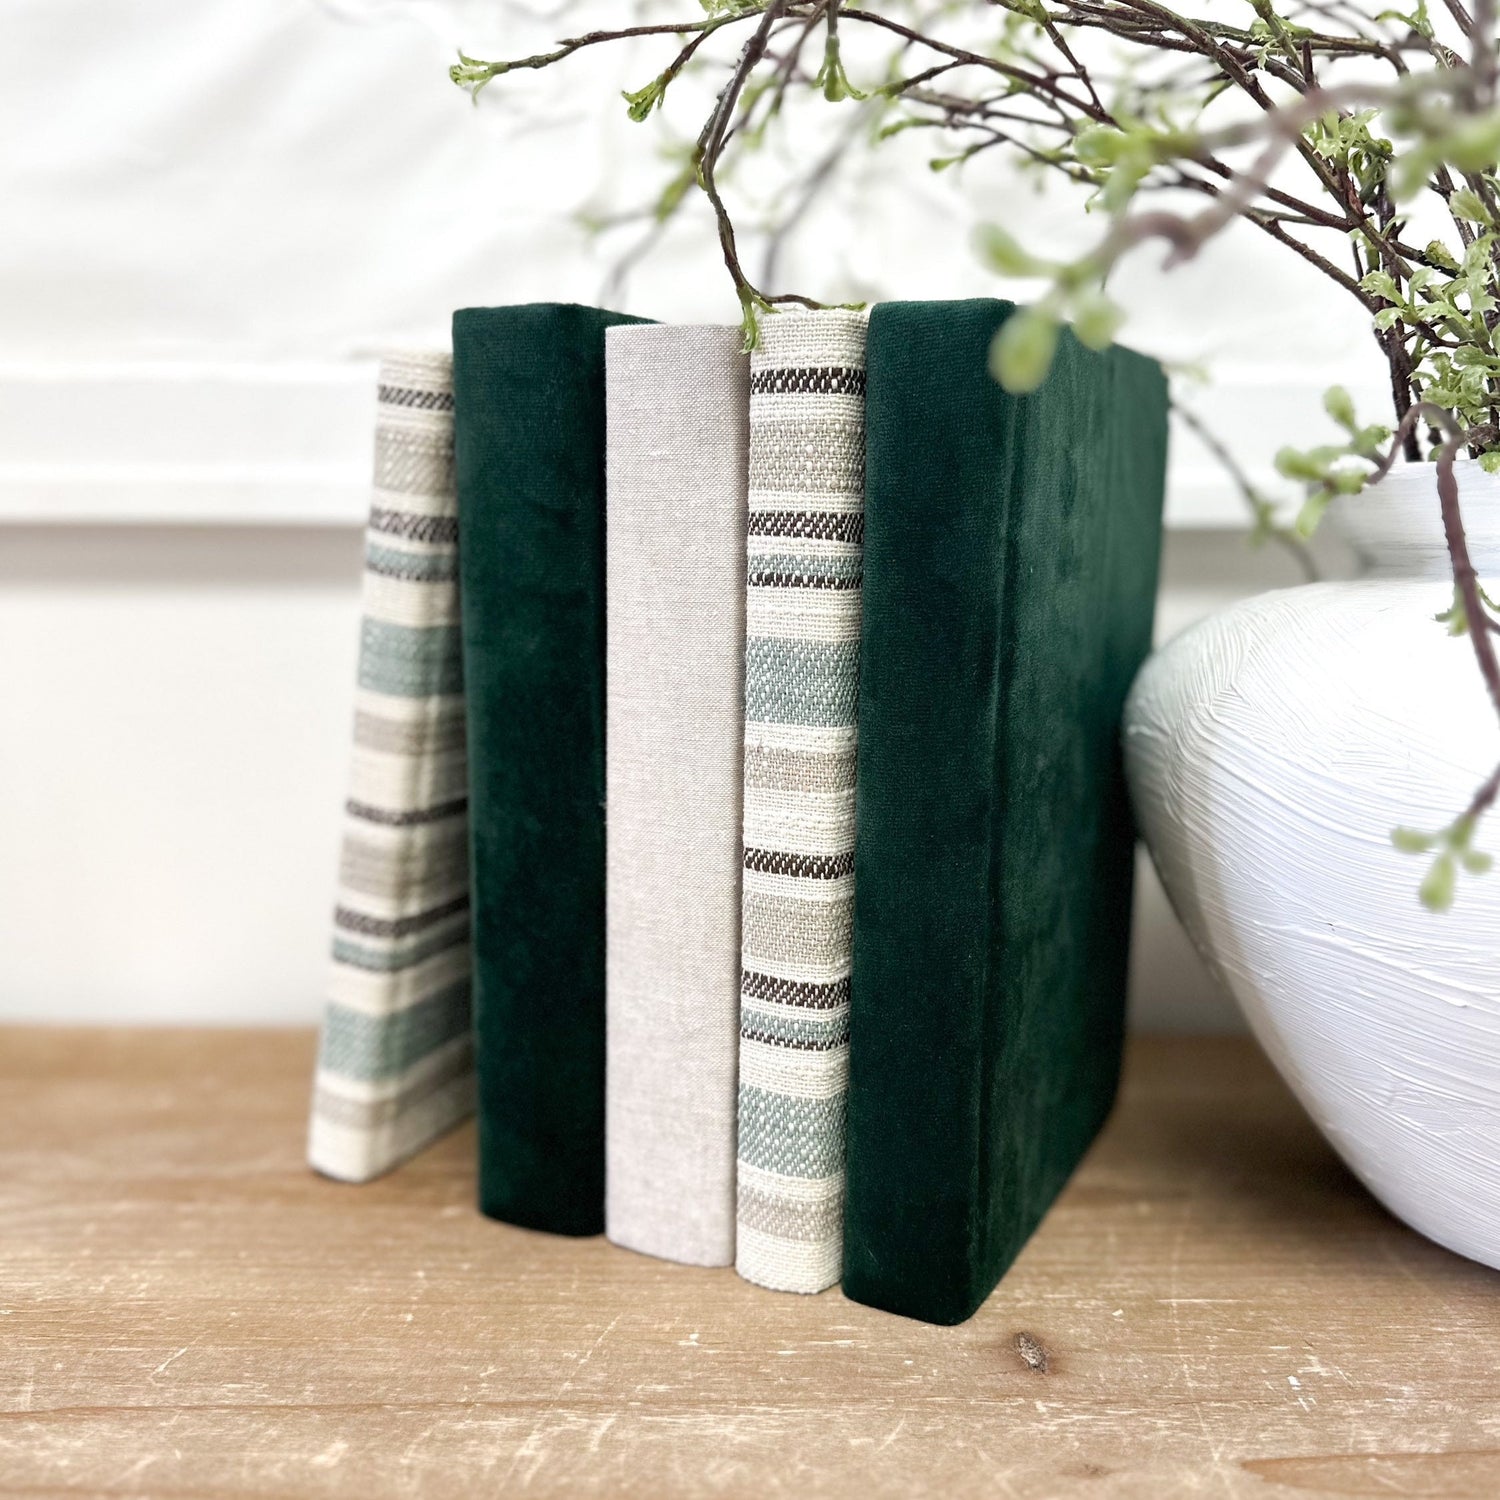 Linen Covered Books, Decorative Books, Green Velvet Designer Books